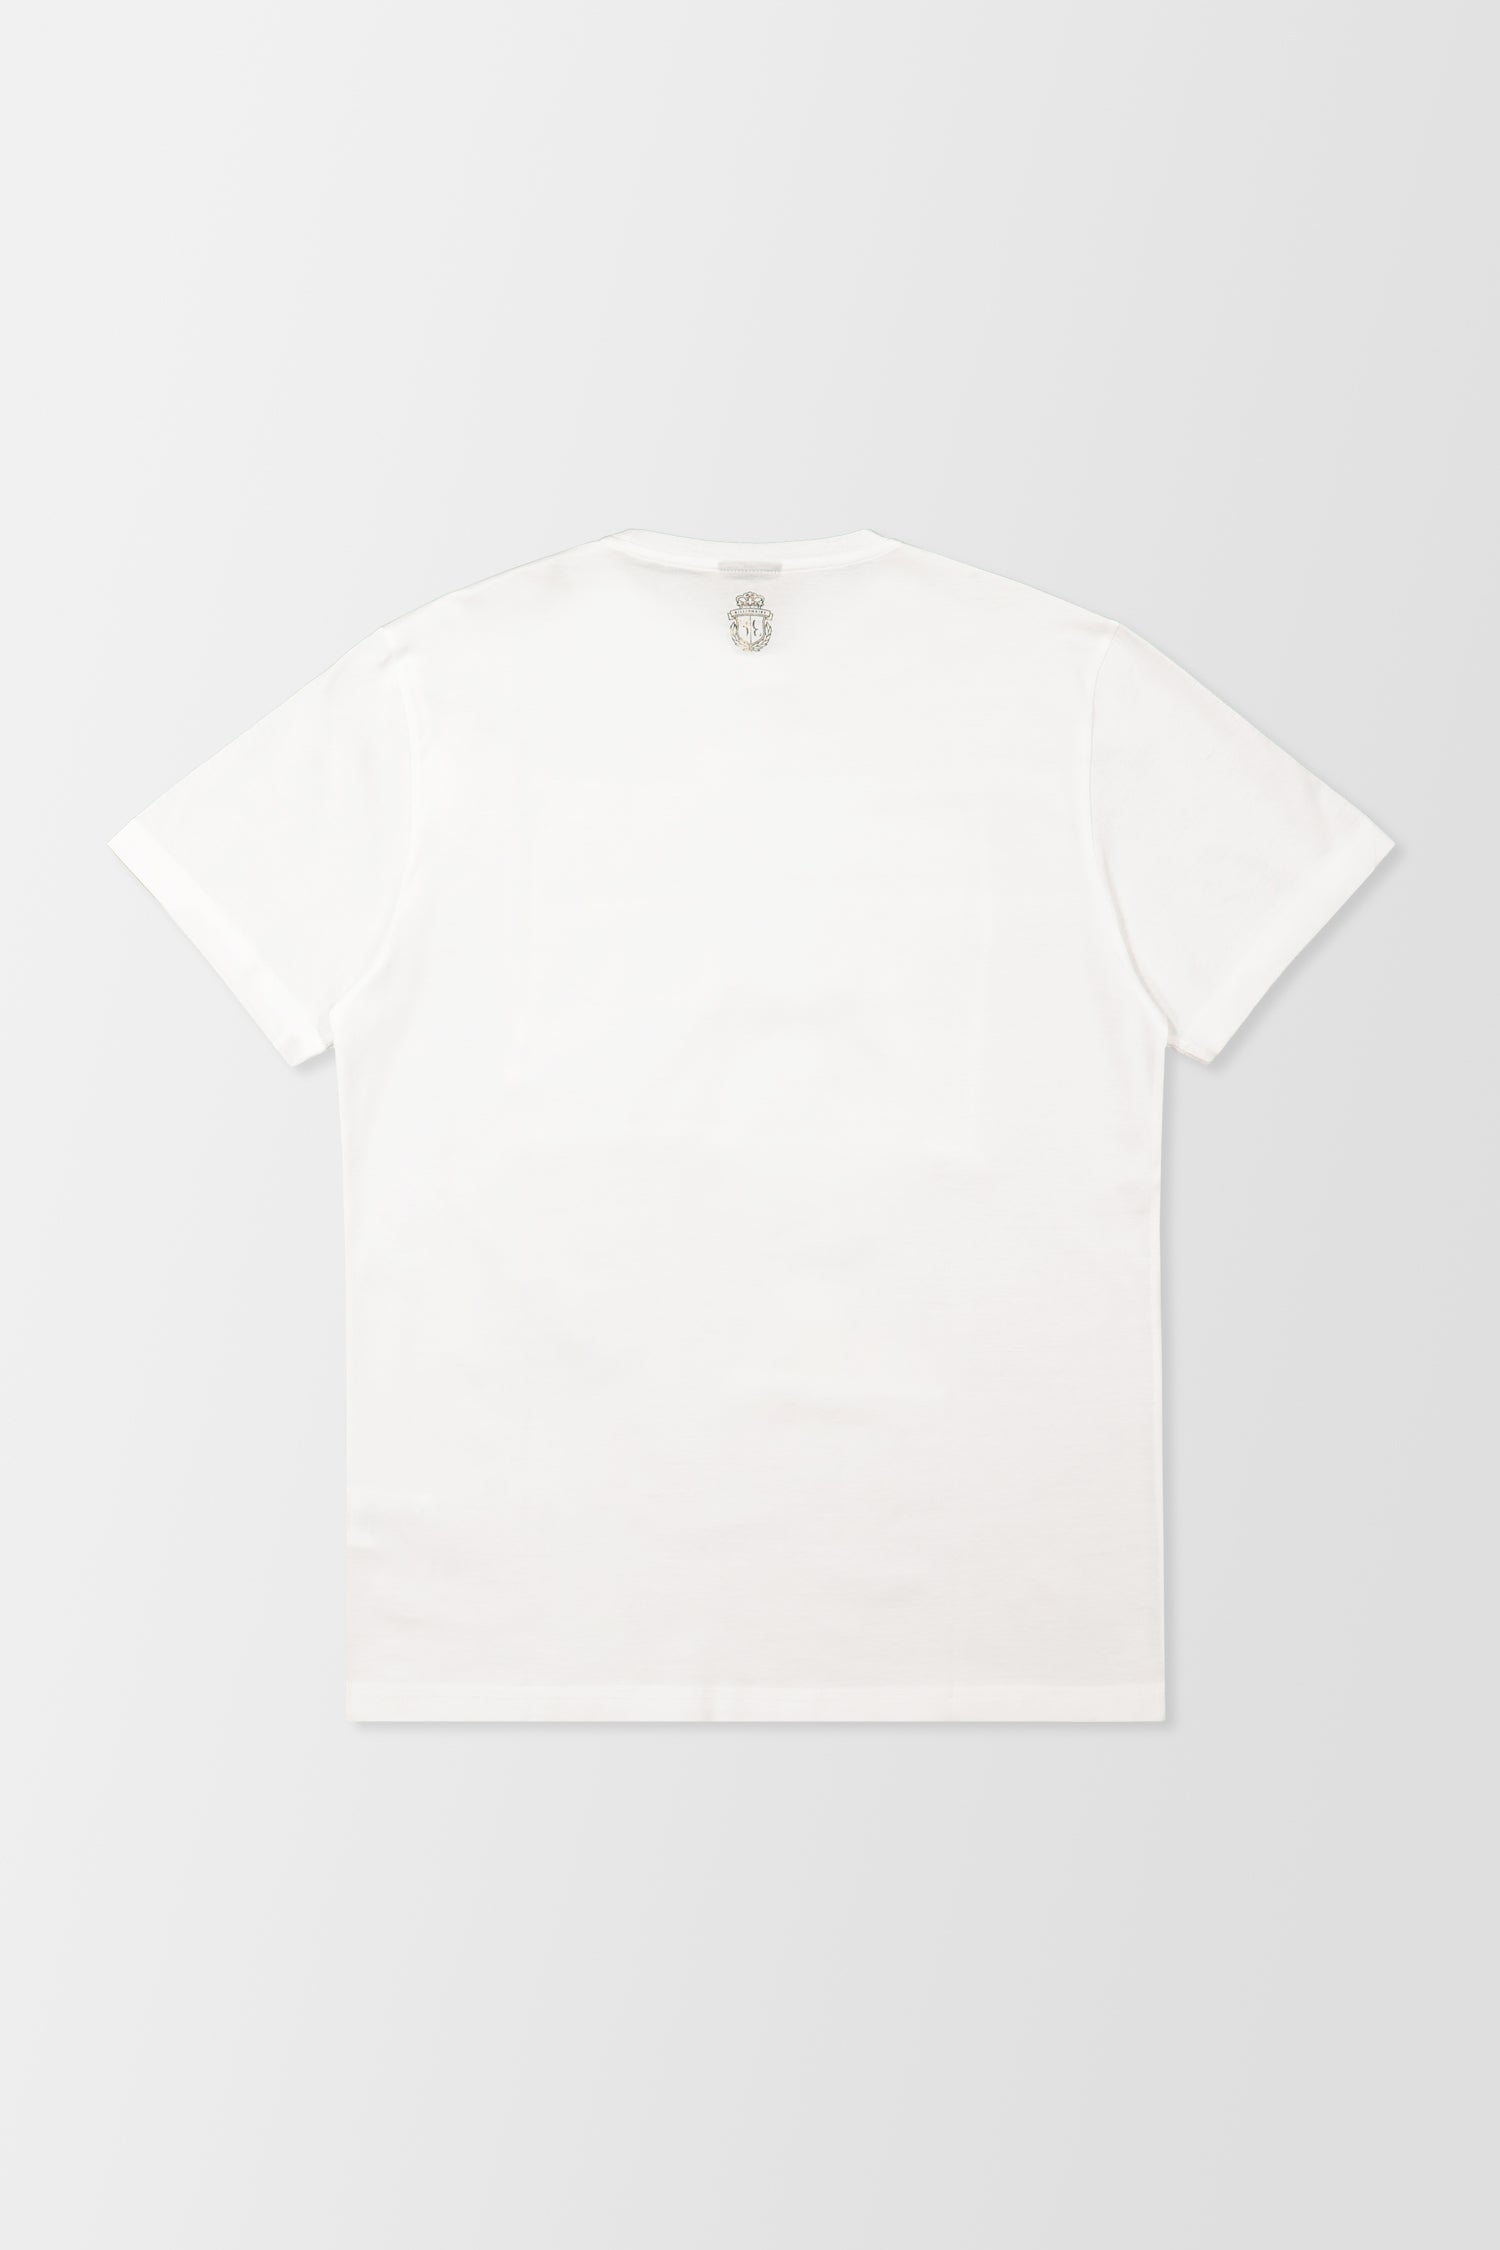 Billionaire White SS Money T-Shirt